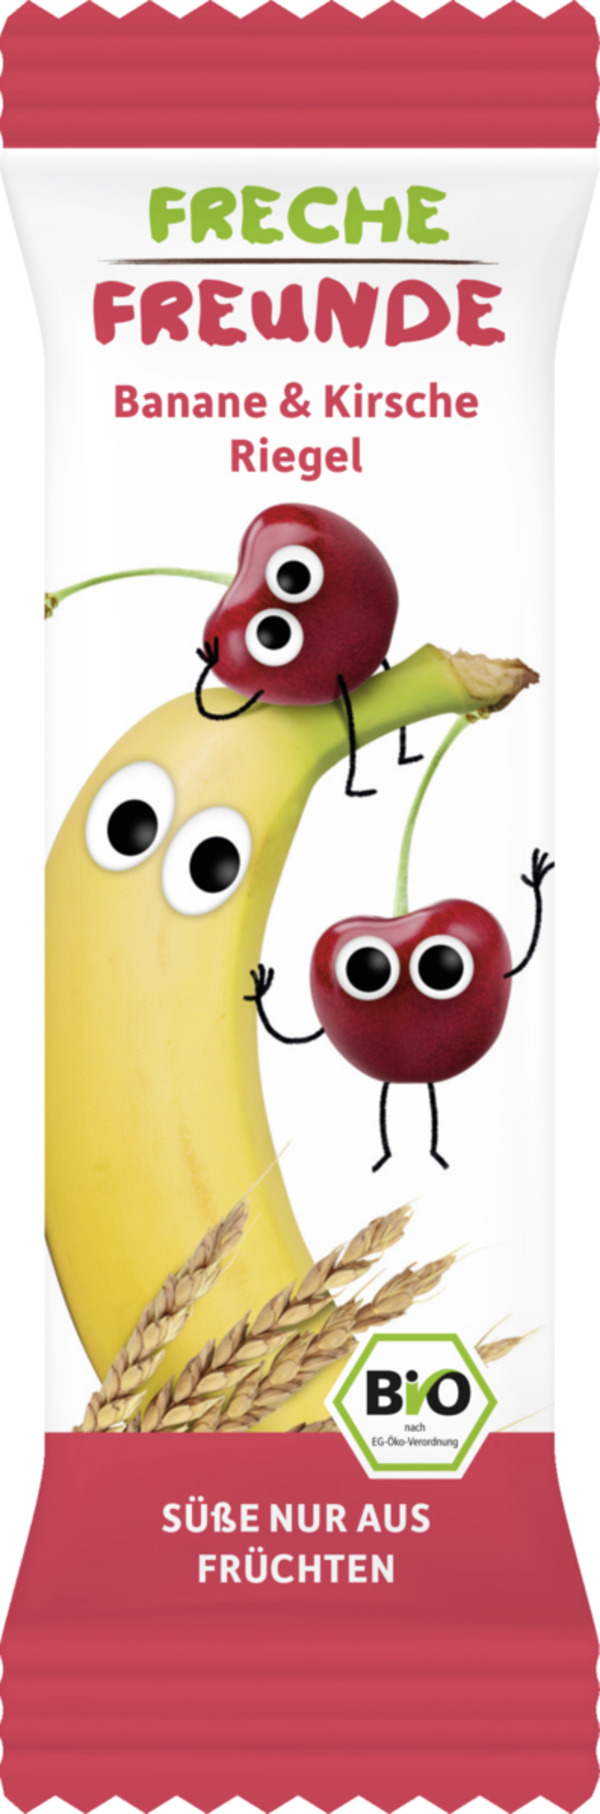 Bild 1 von Freche Freunde Bio Frecher Riegel Banane & Kirsche